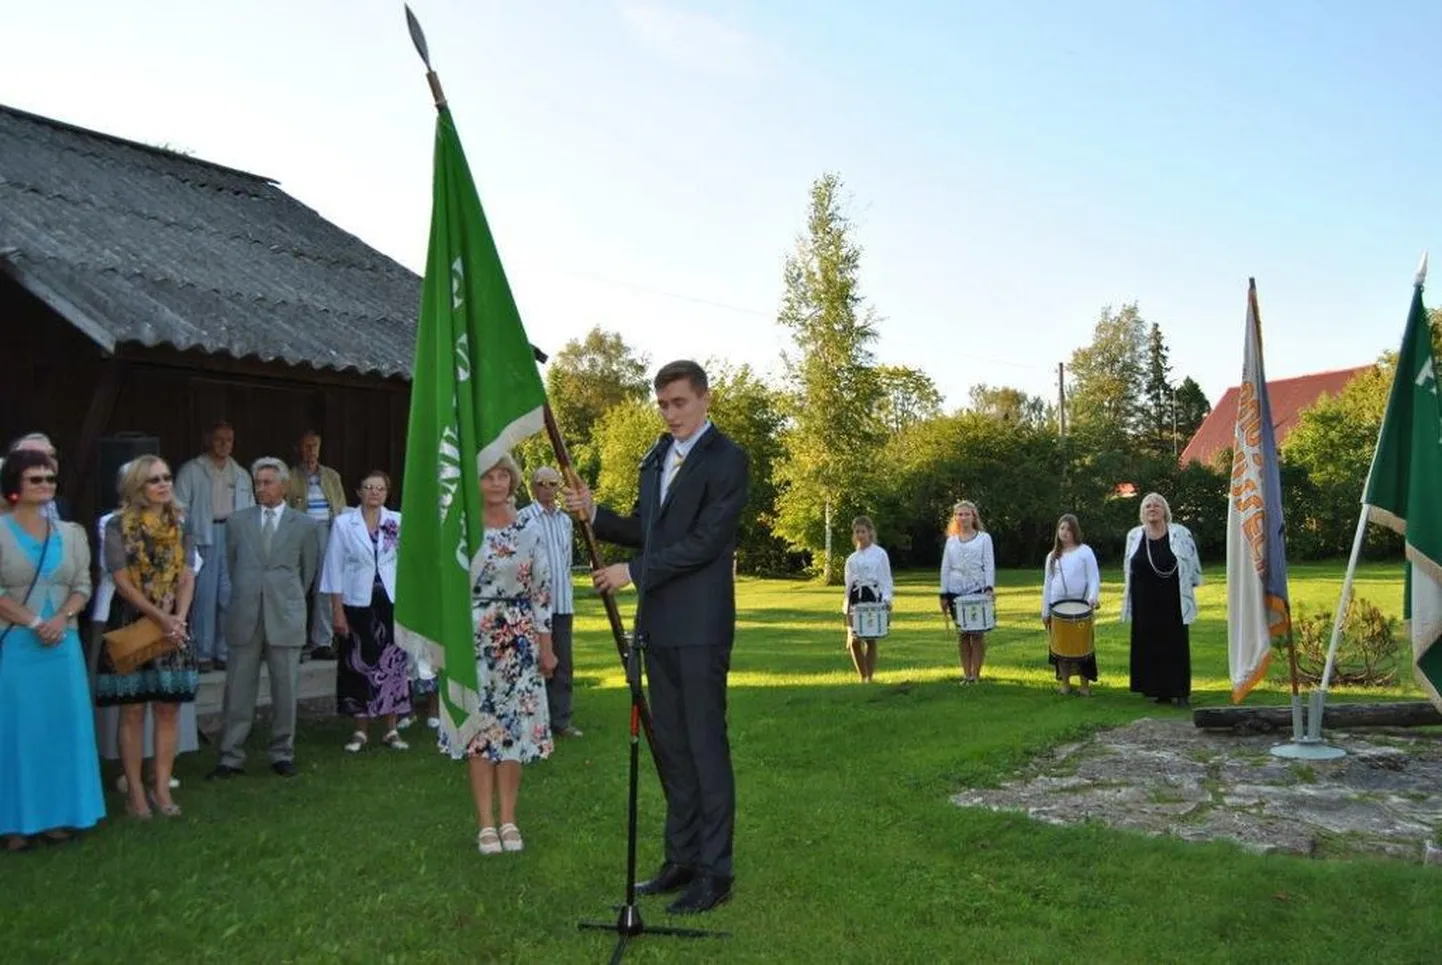 Pärnu-Jaagupi gümaasiumi lipu üleandmine koolimuuseumile augustis 2016.